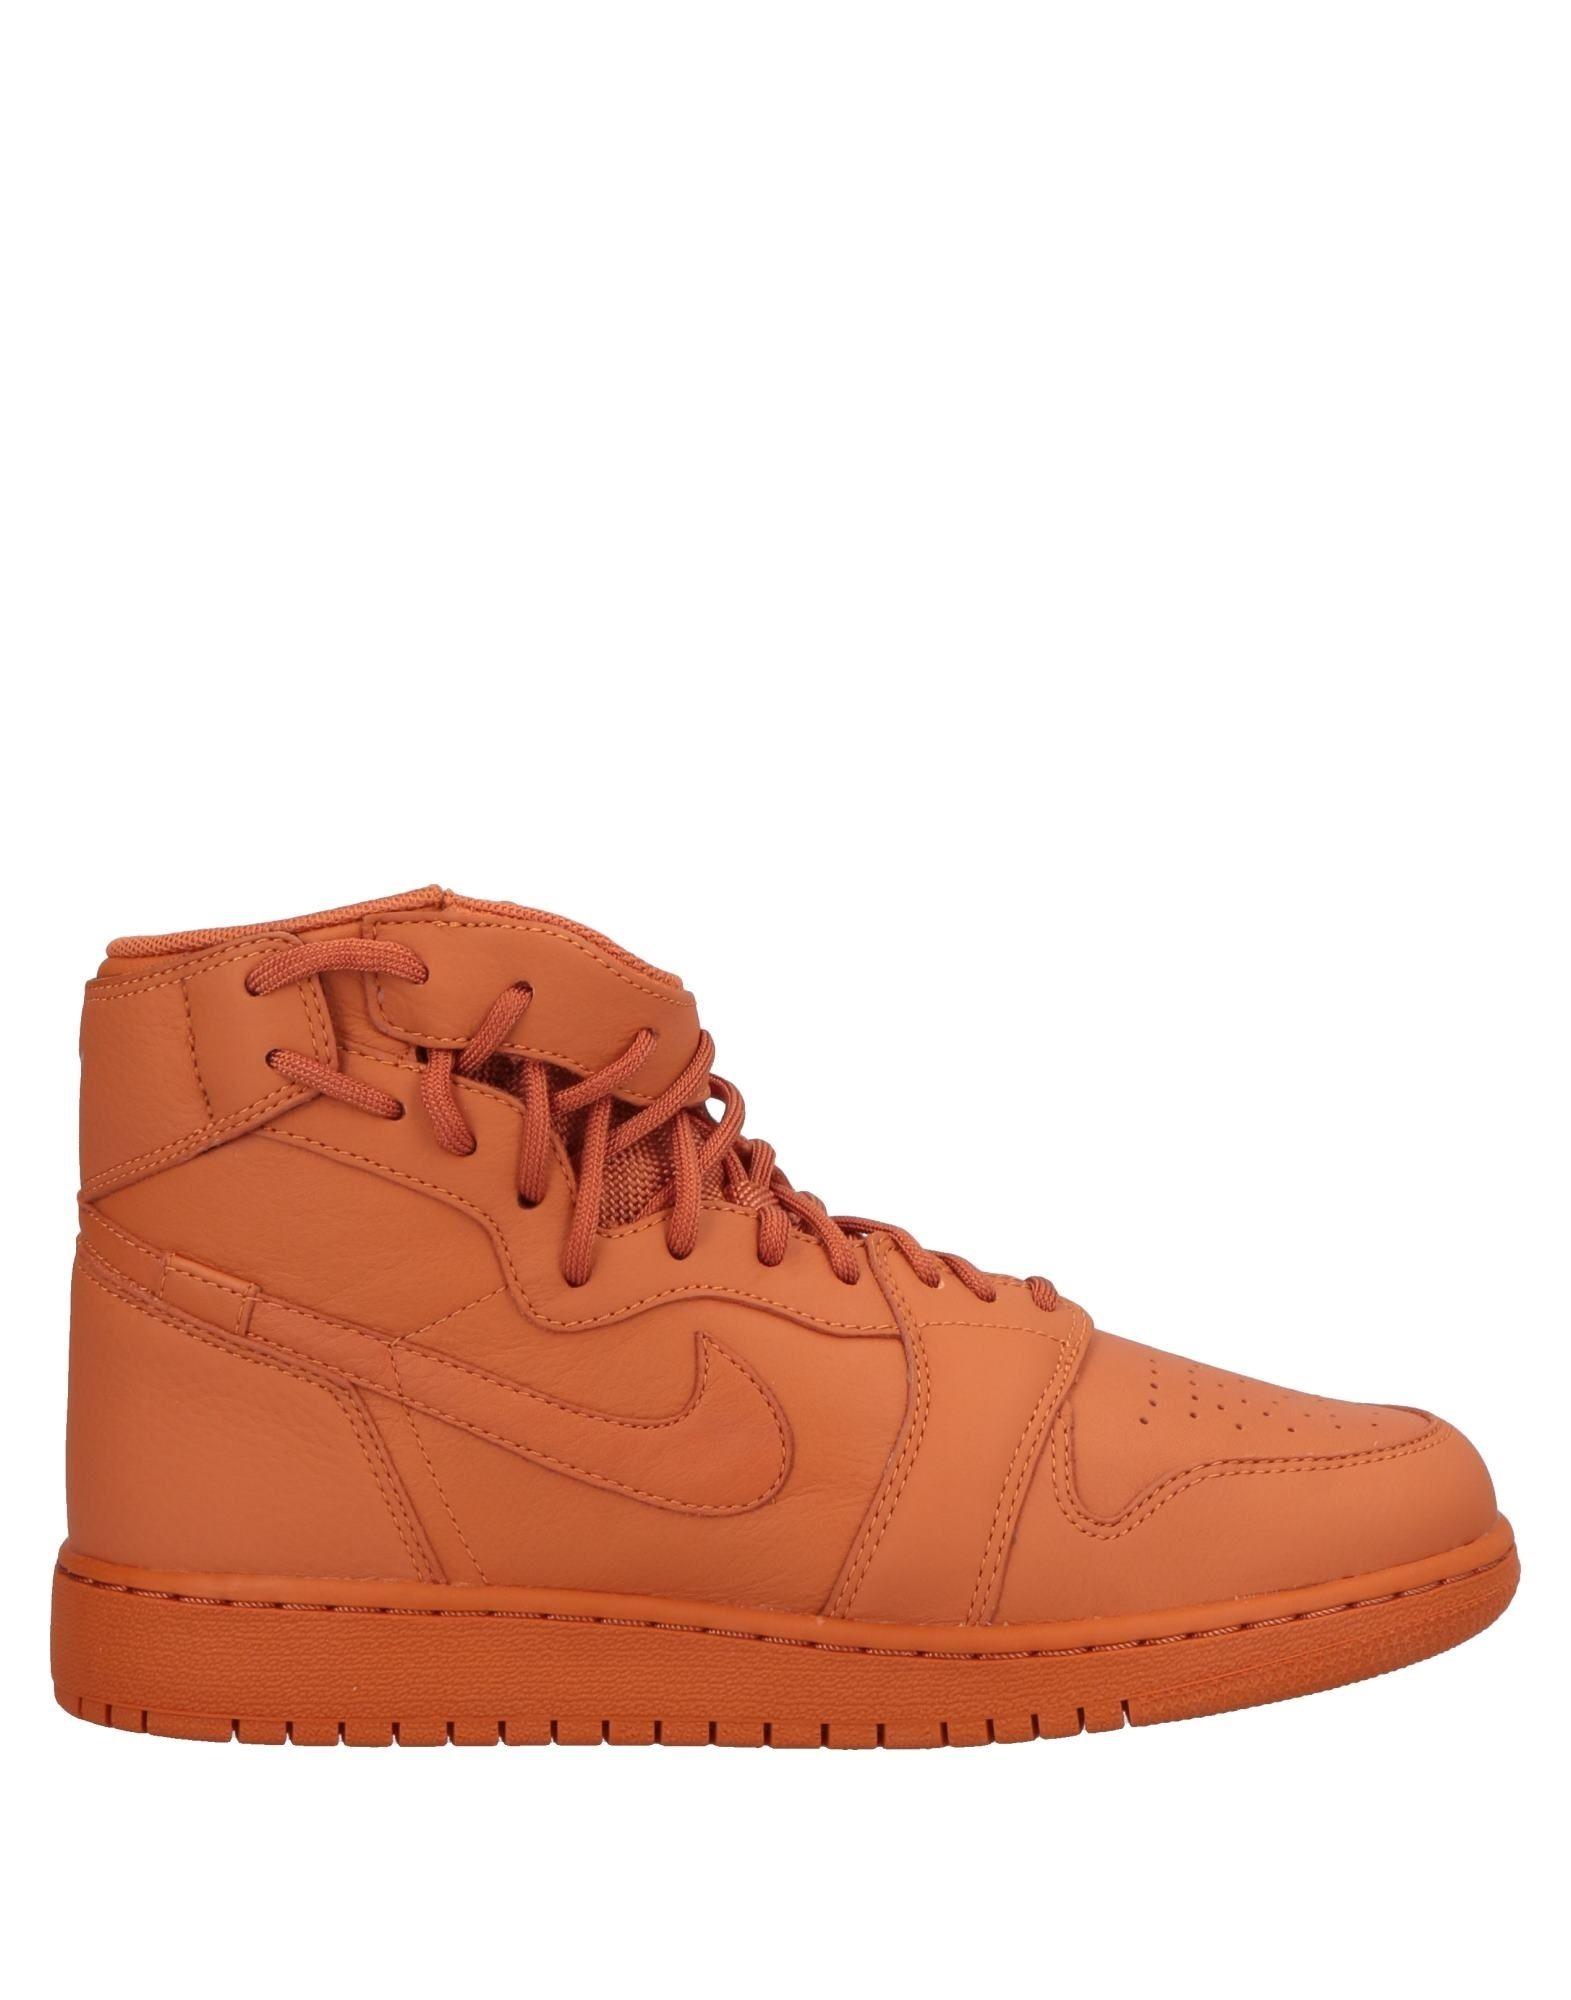 nike orange high top sneakers